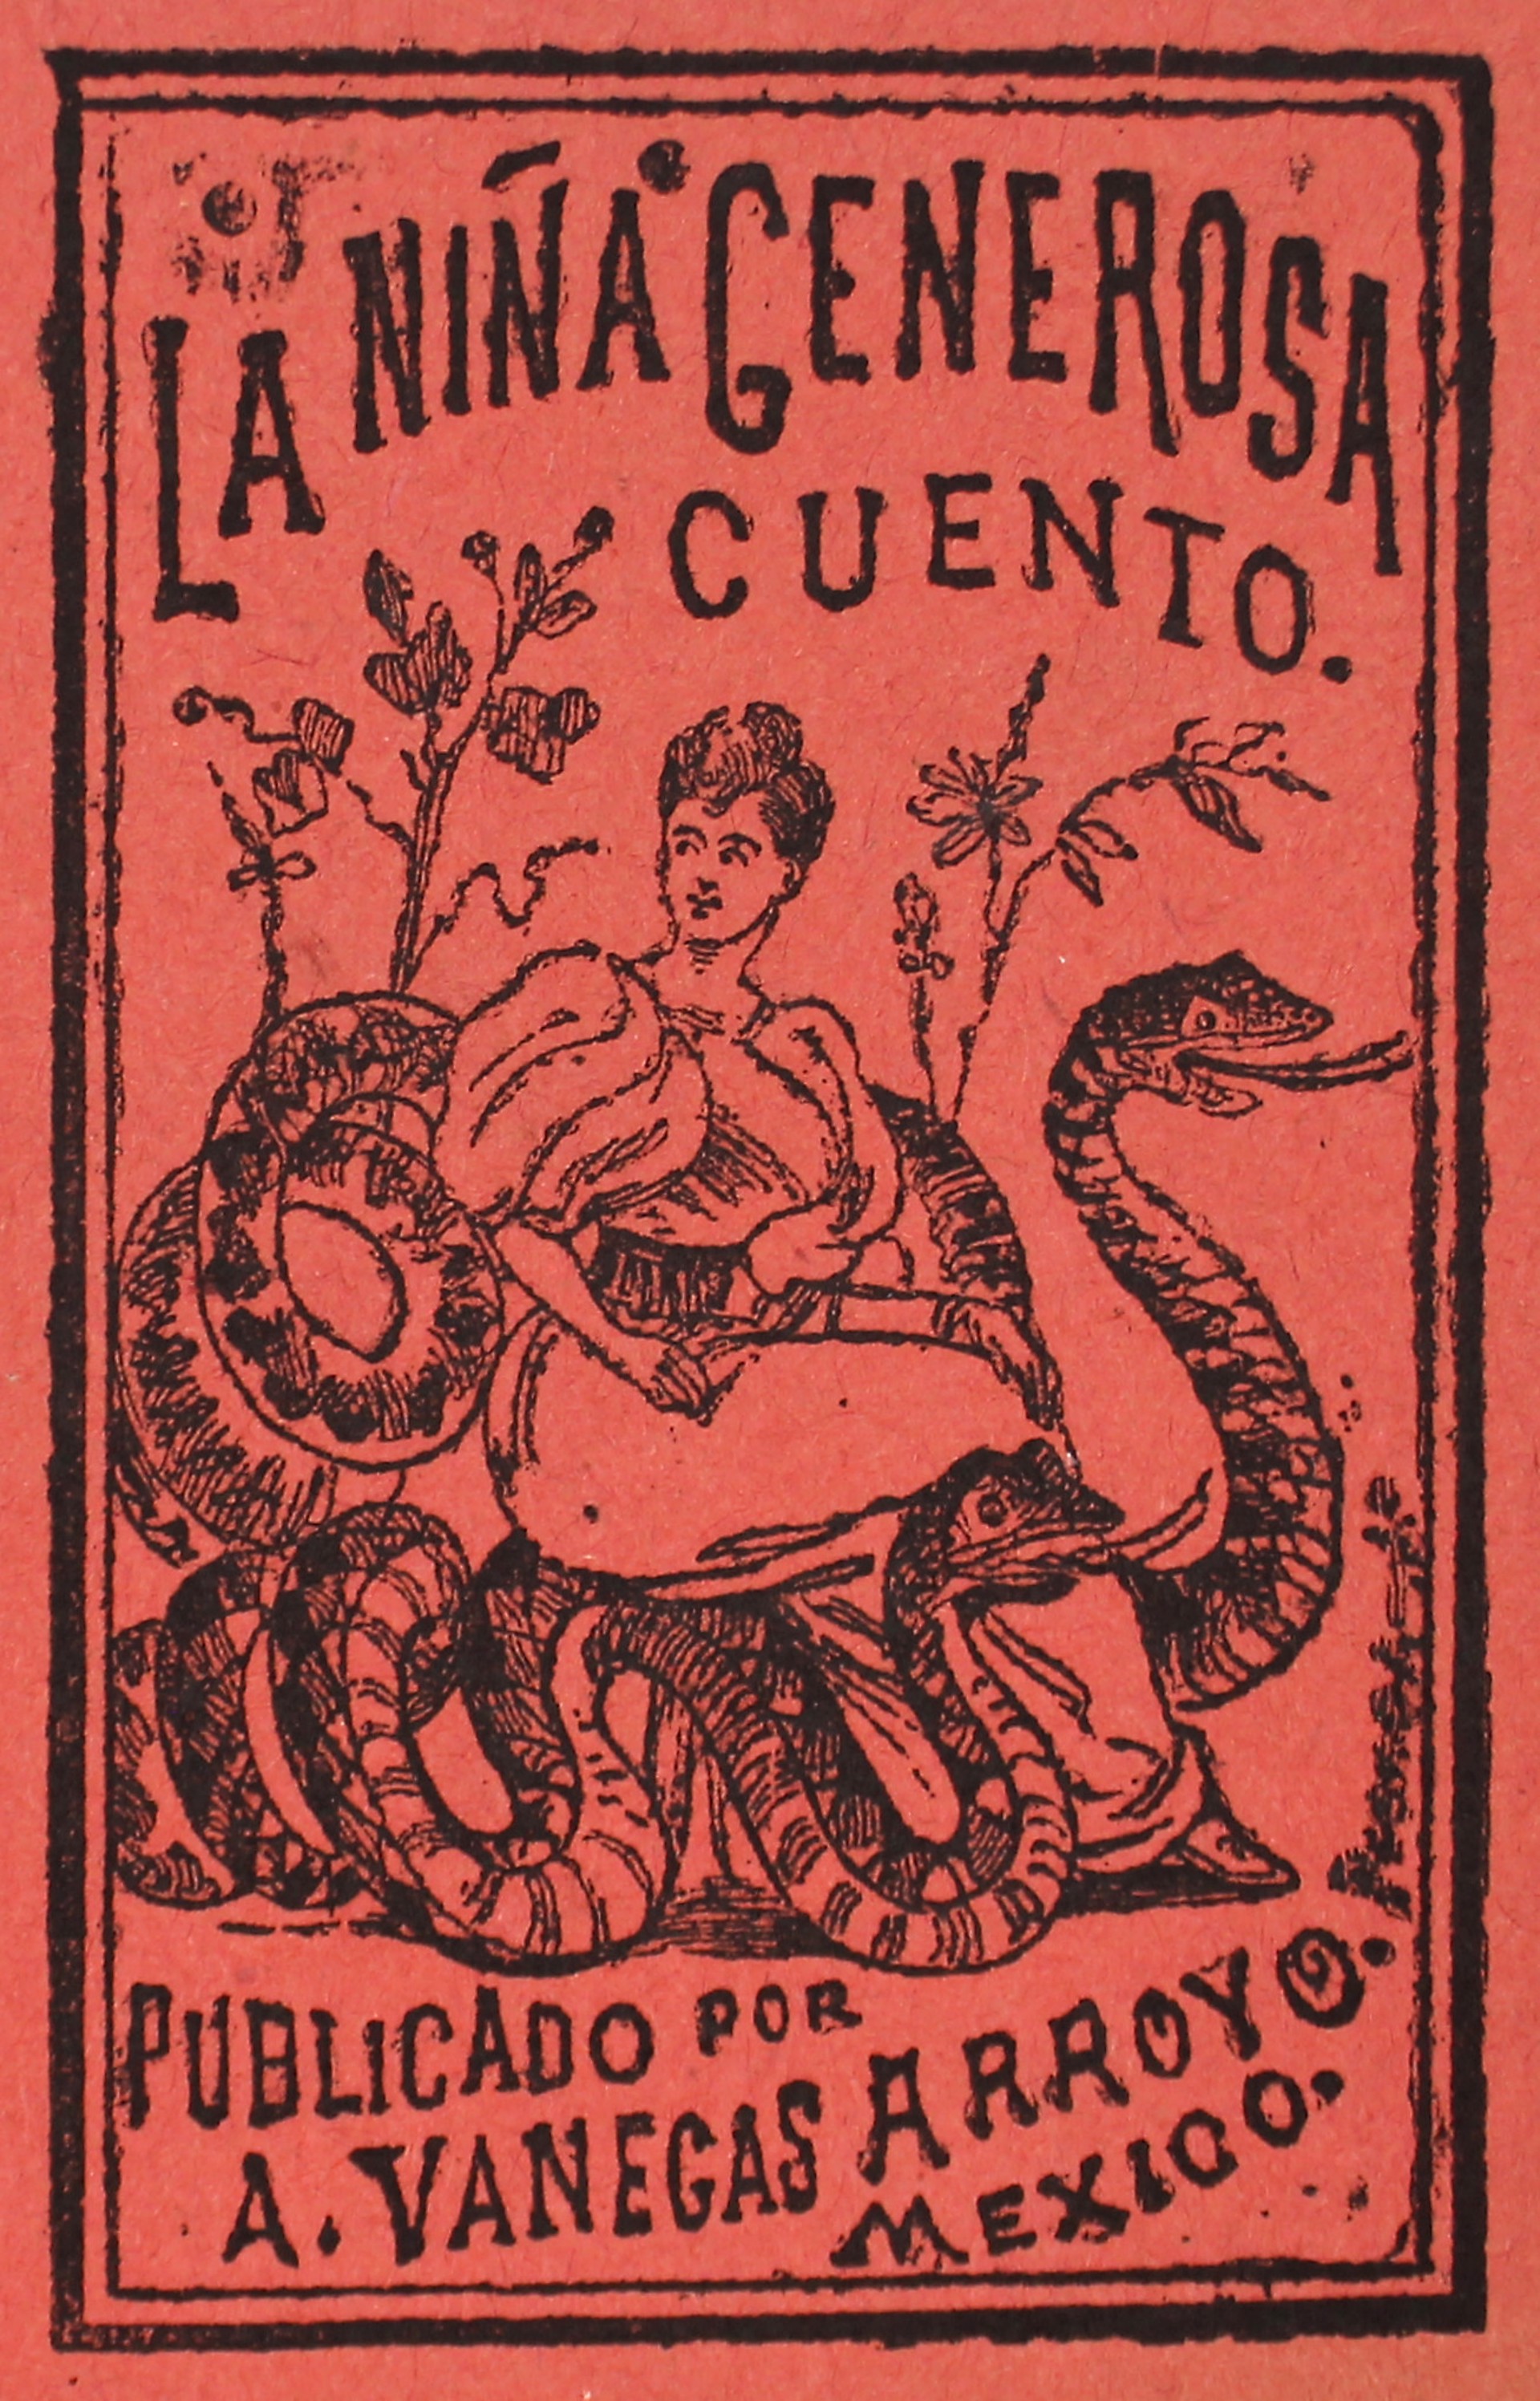 La Nina Generosa by José Guadalupe Posada